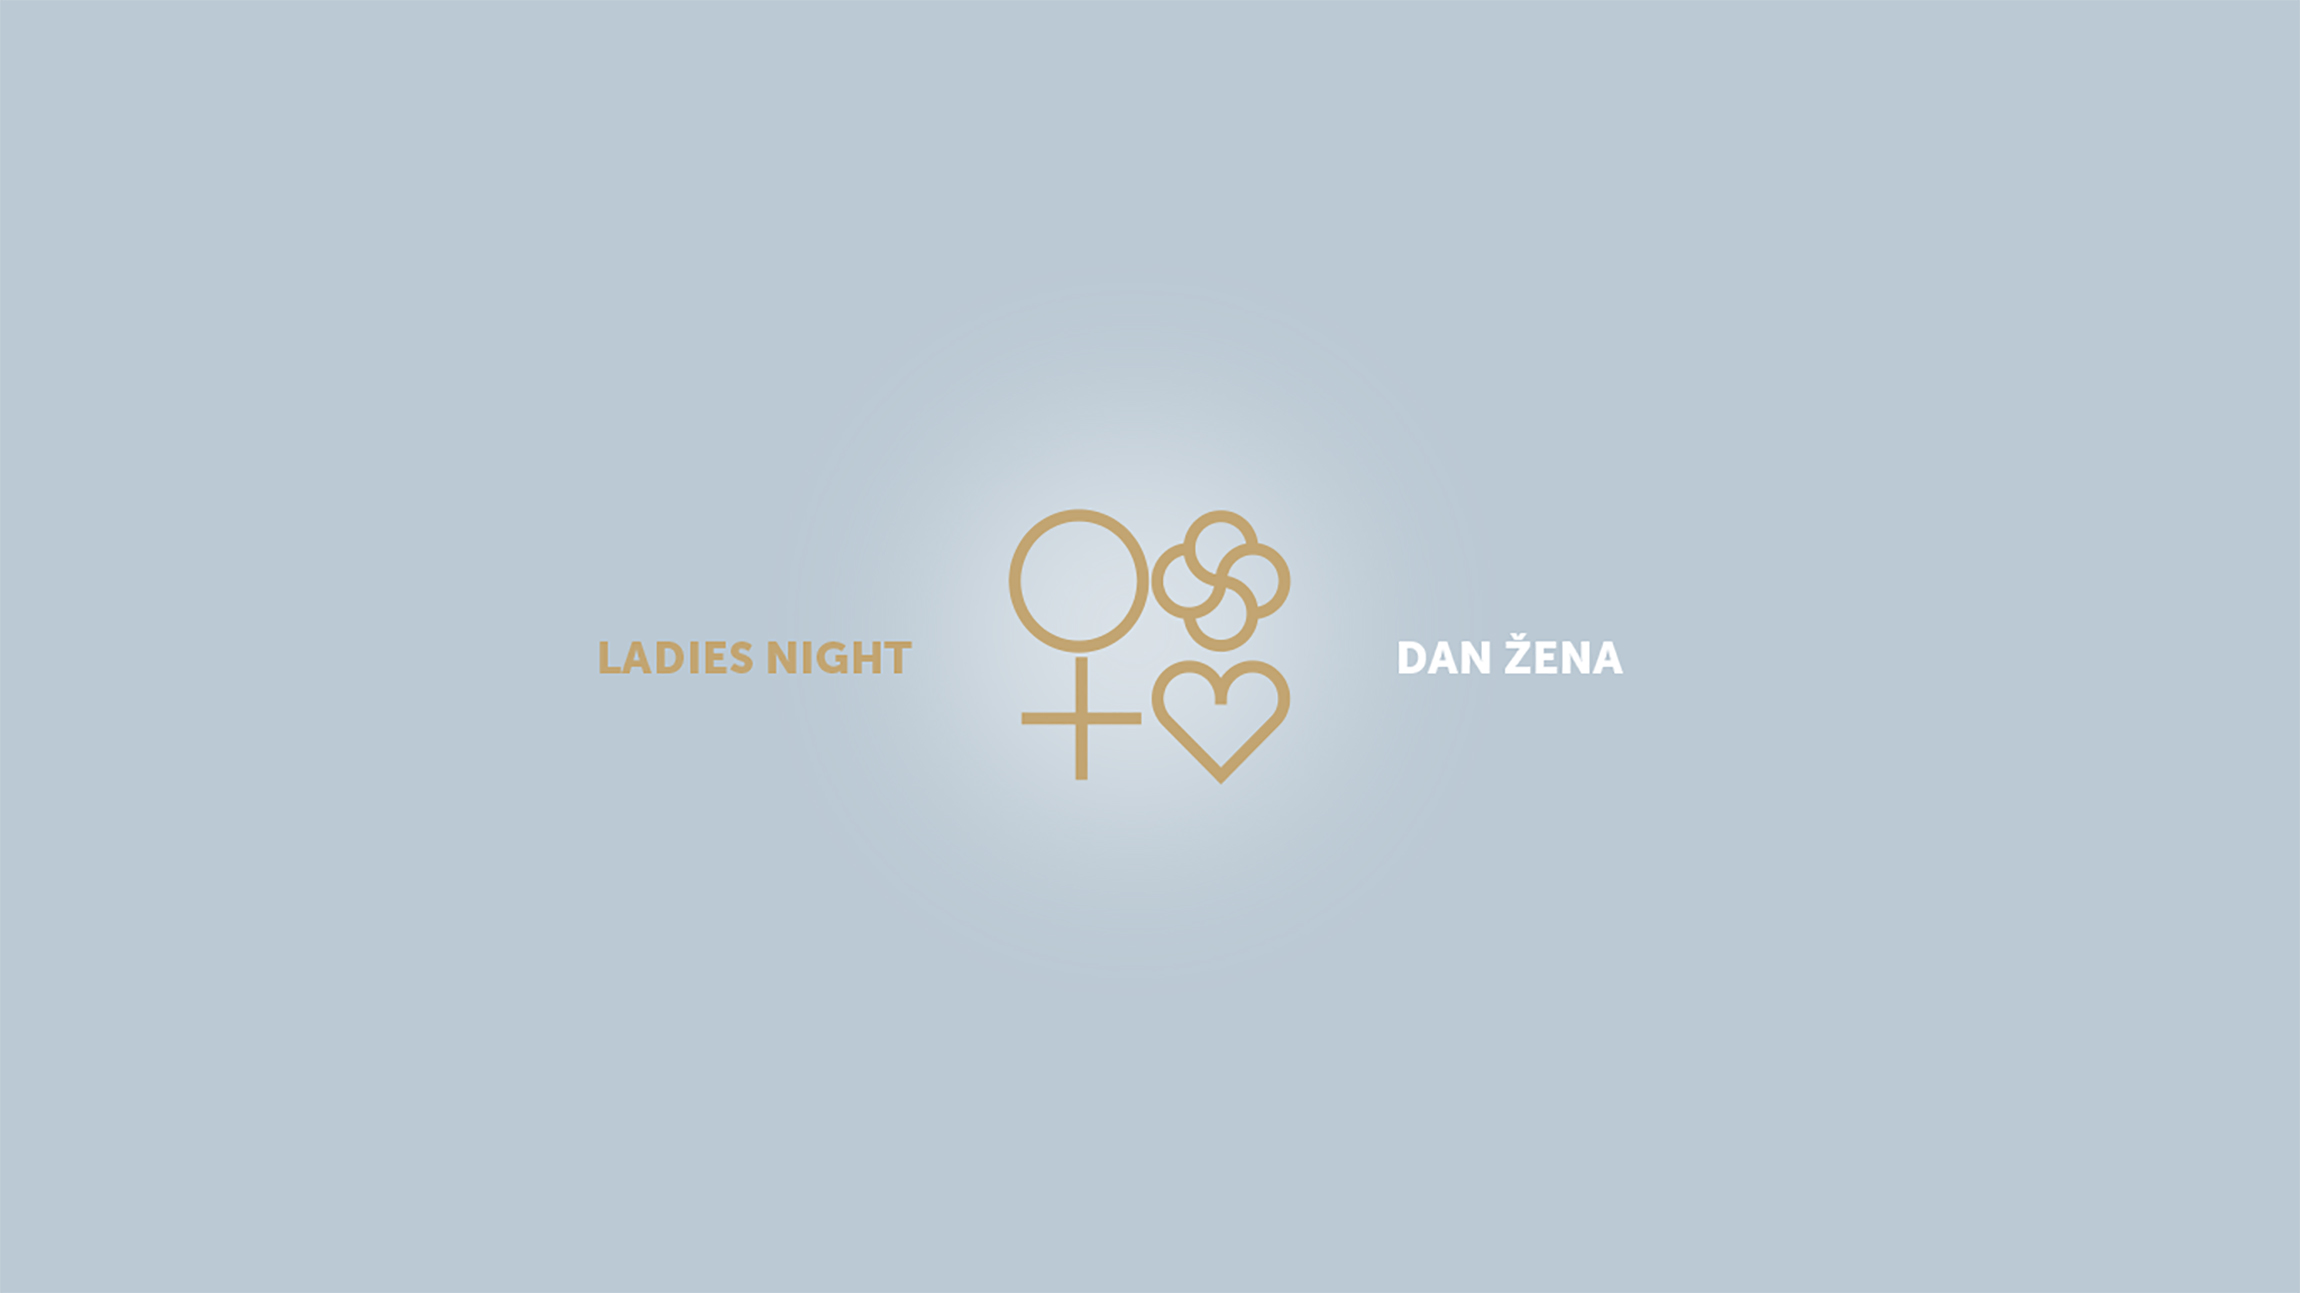 Ladies night - Dan žena